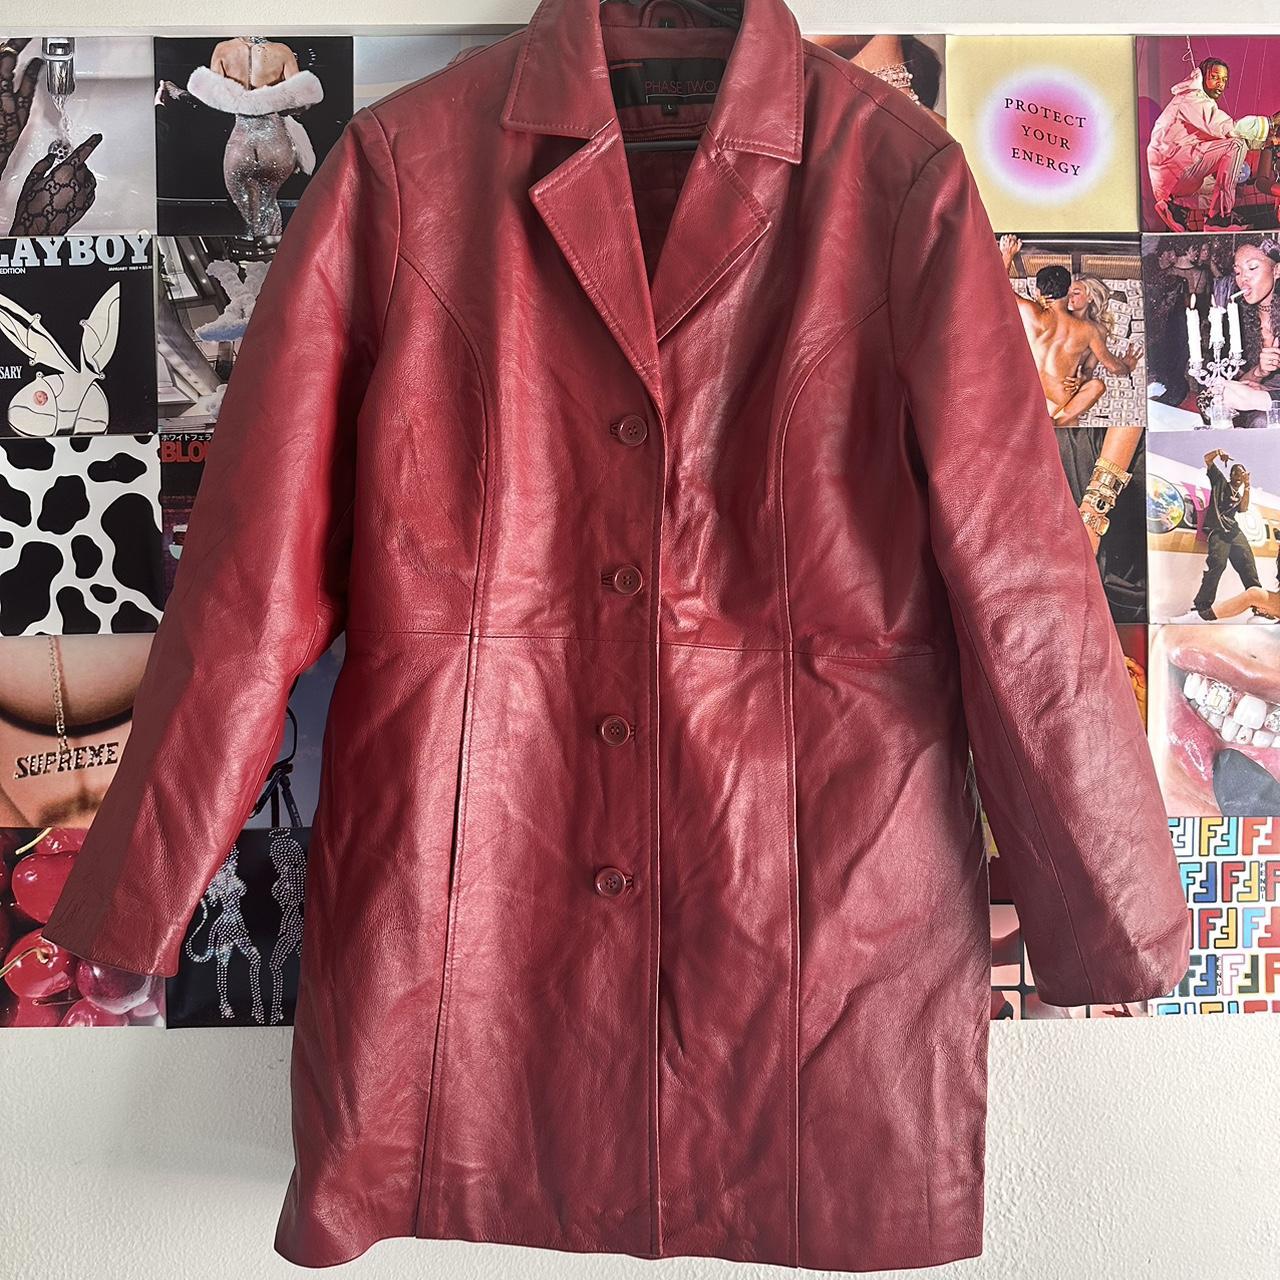 VINTAGE LONG LEATHER JACKET 🍒 red leather 🍒 length... - Depop